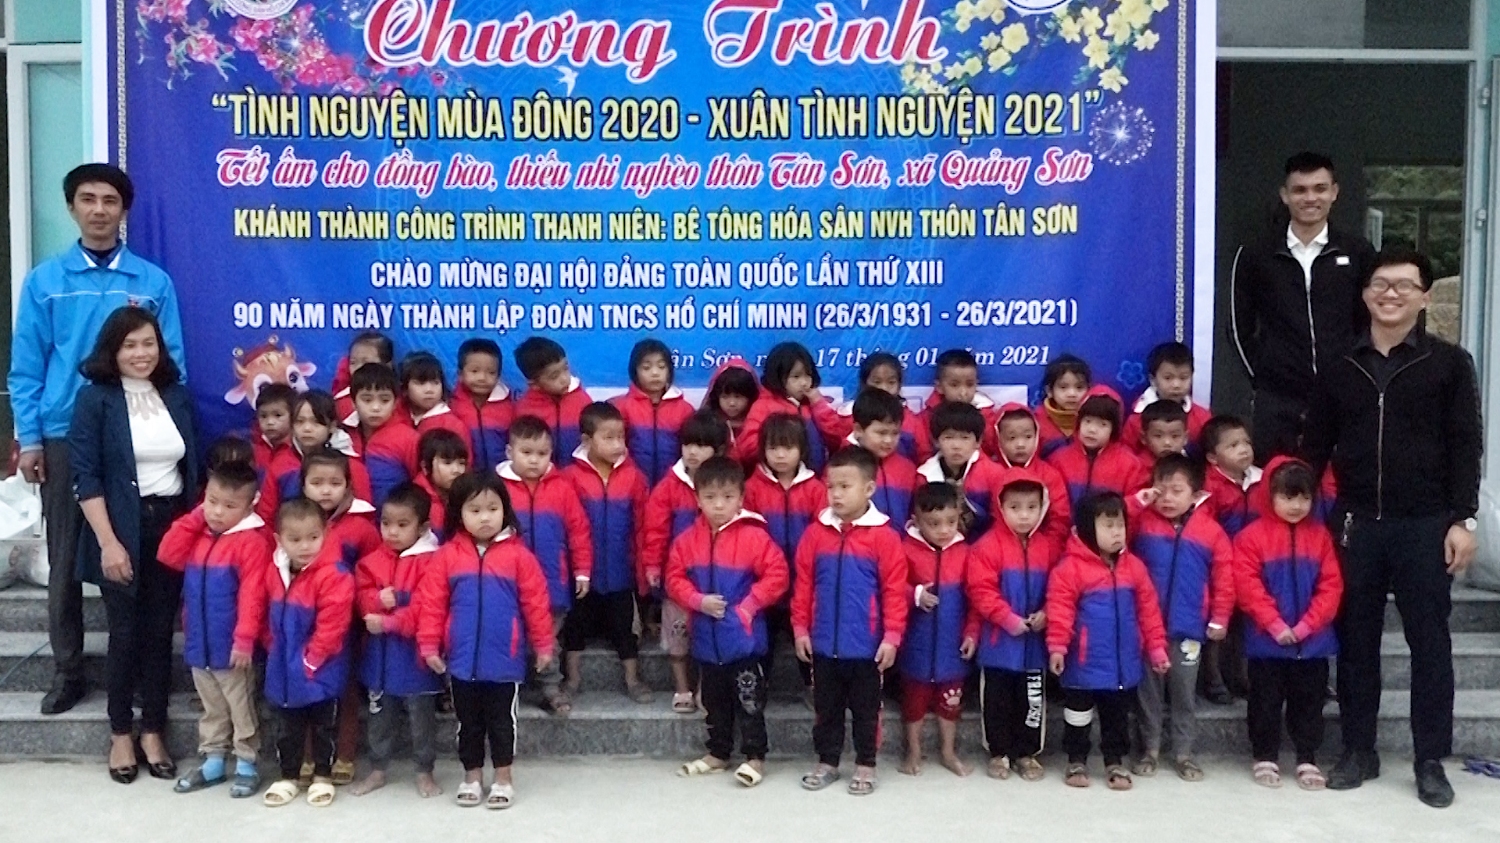 Trao tặng 55 áo phao cho học sinh trường Mầm non Quảng Sơn.